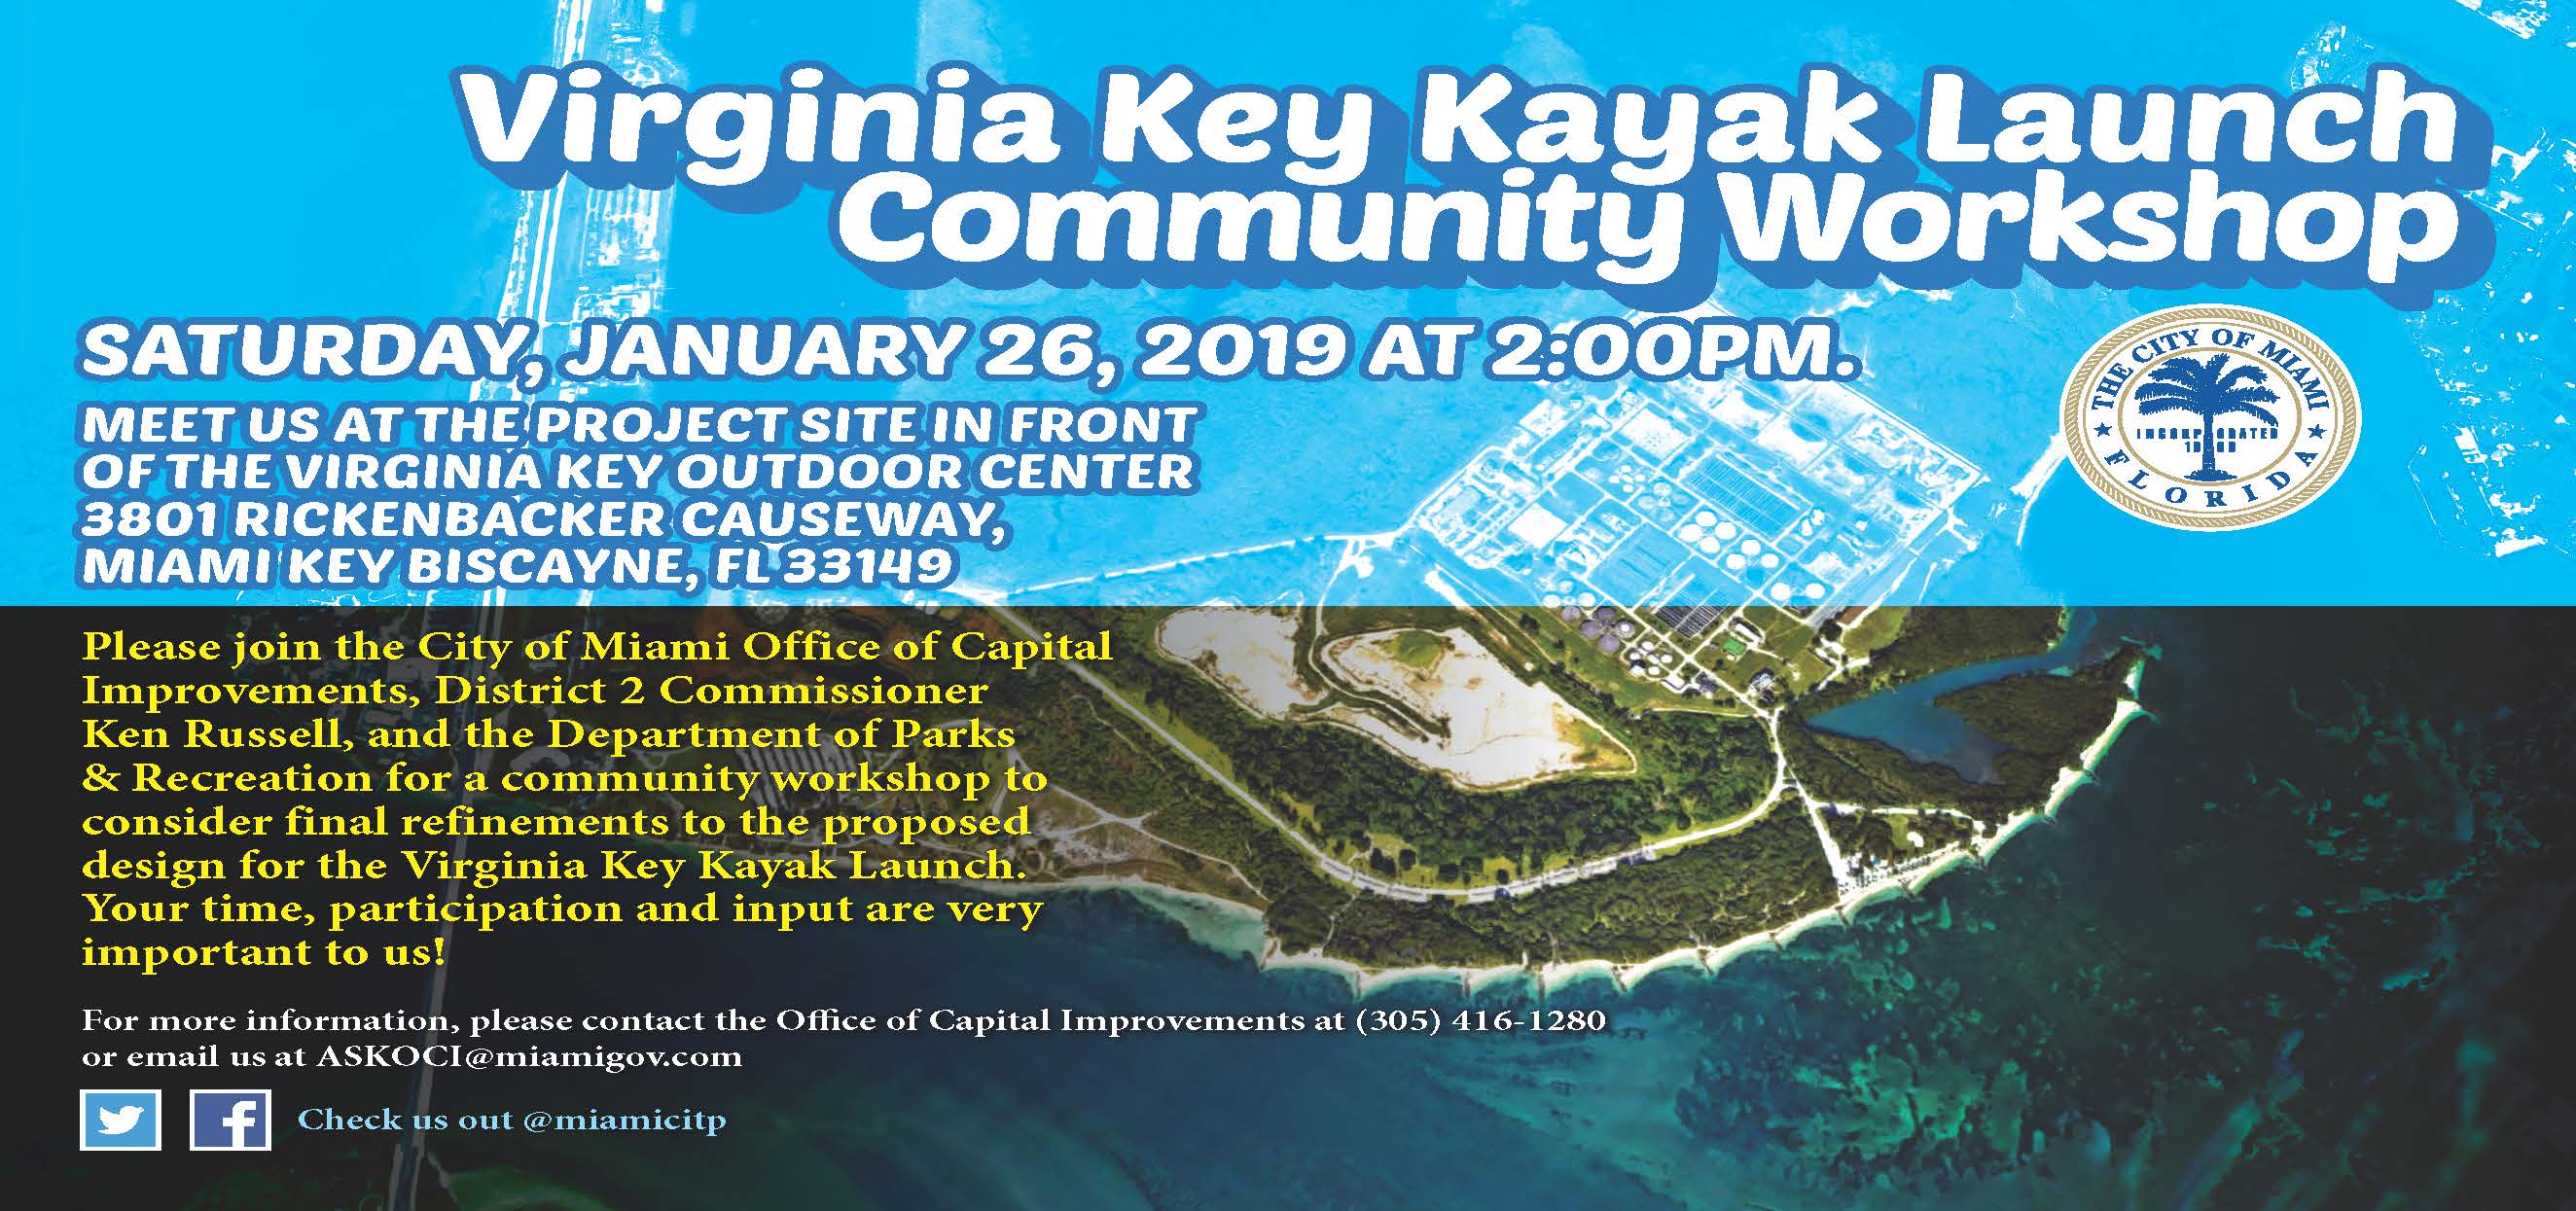 Virginia-Key-Kayak-Launch-Community-Workshop-2019.jpg